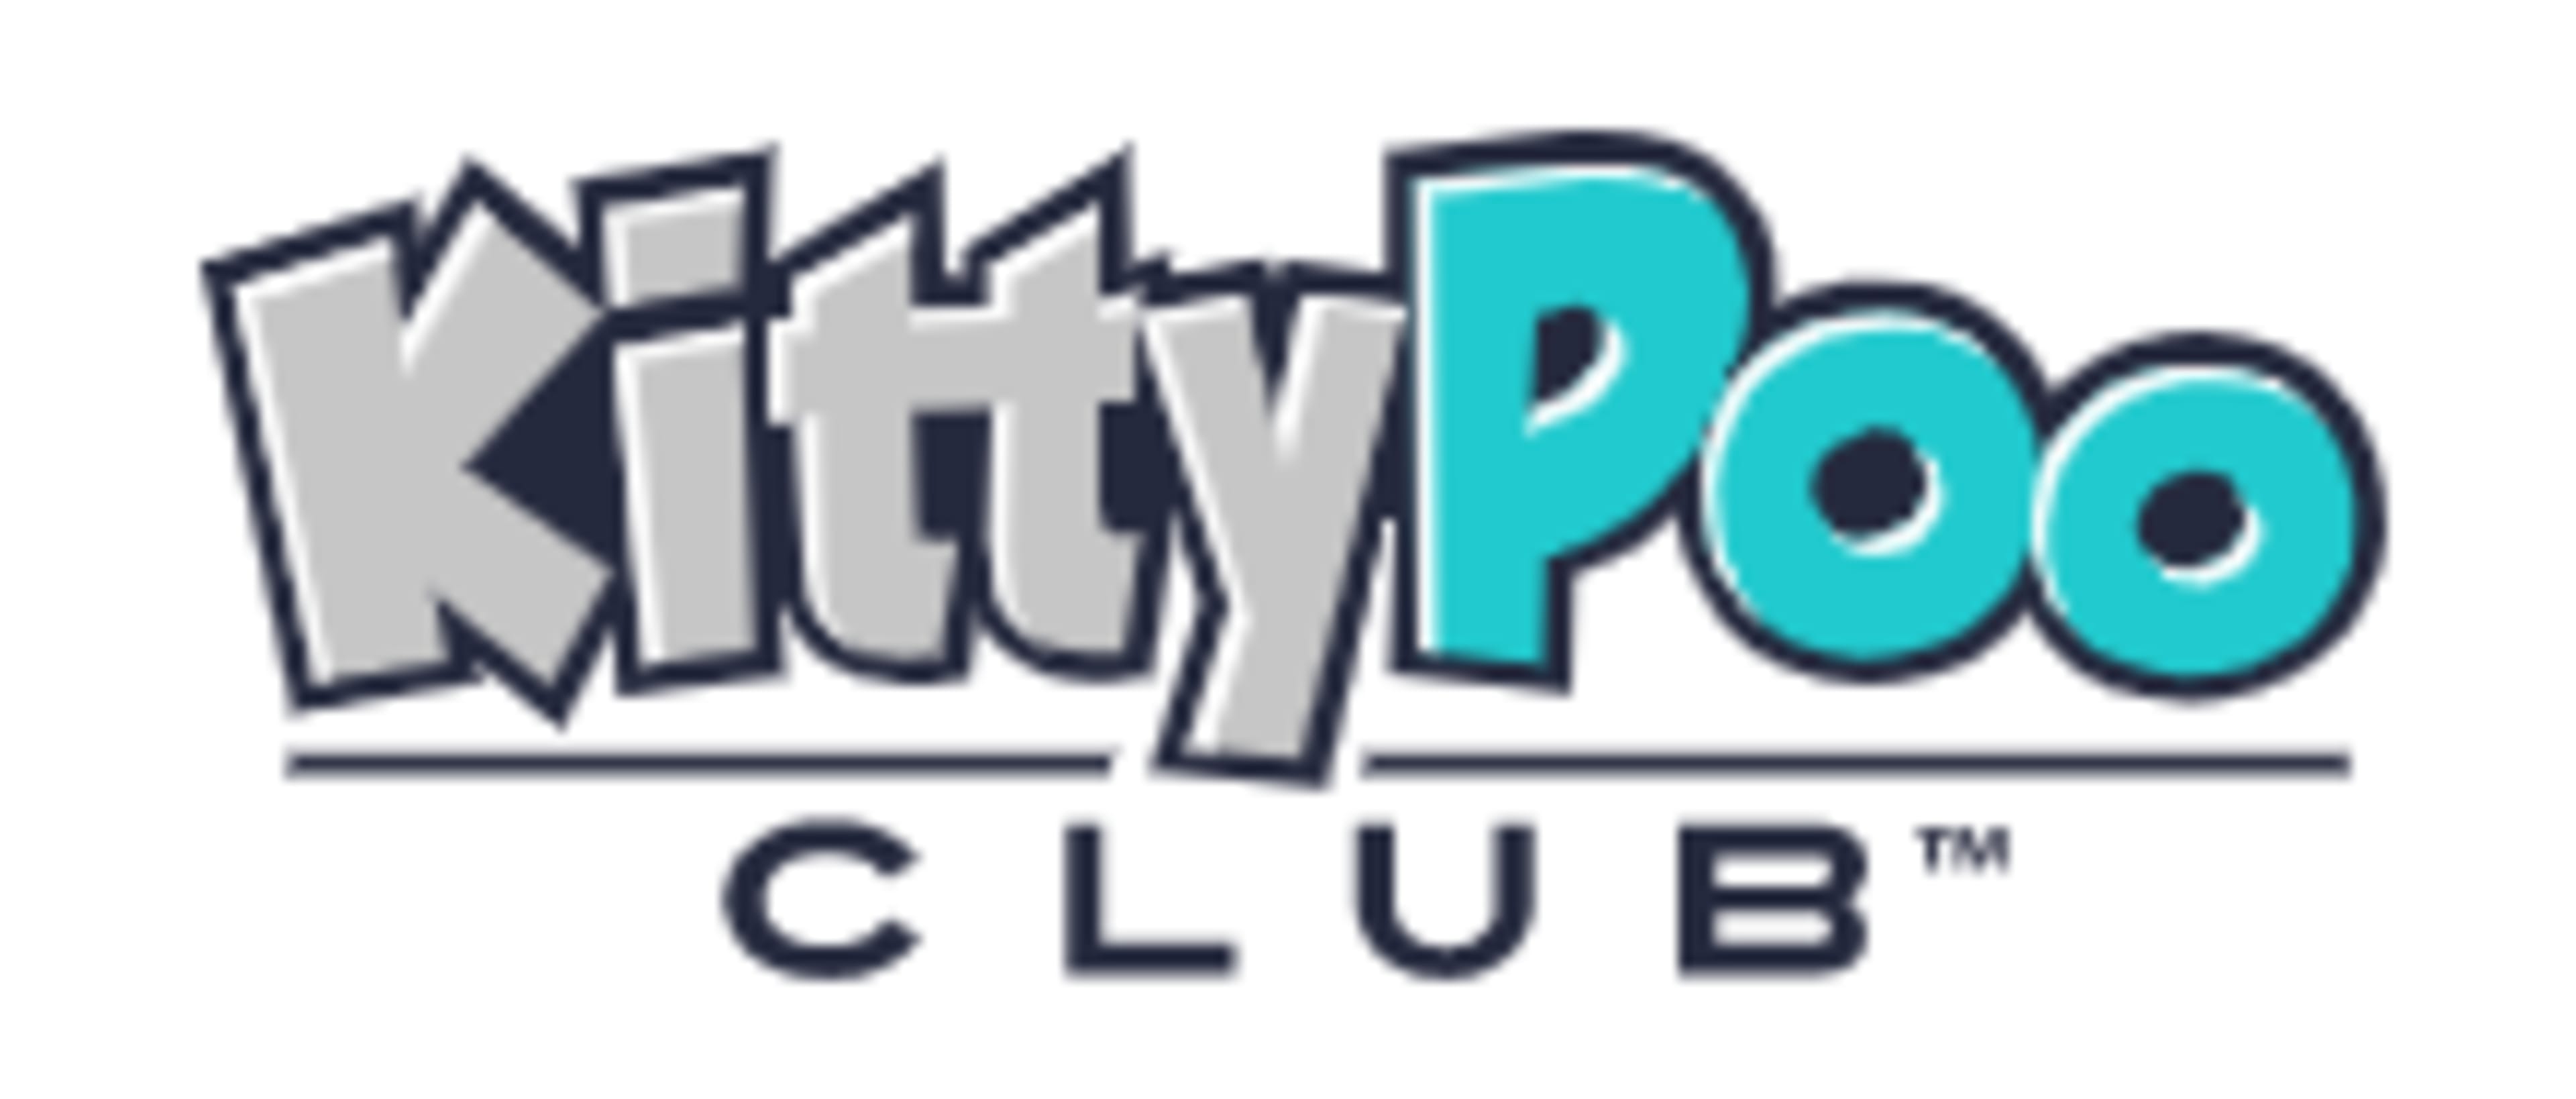 Kitty Poo Club Code